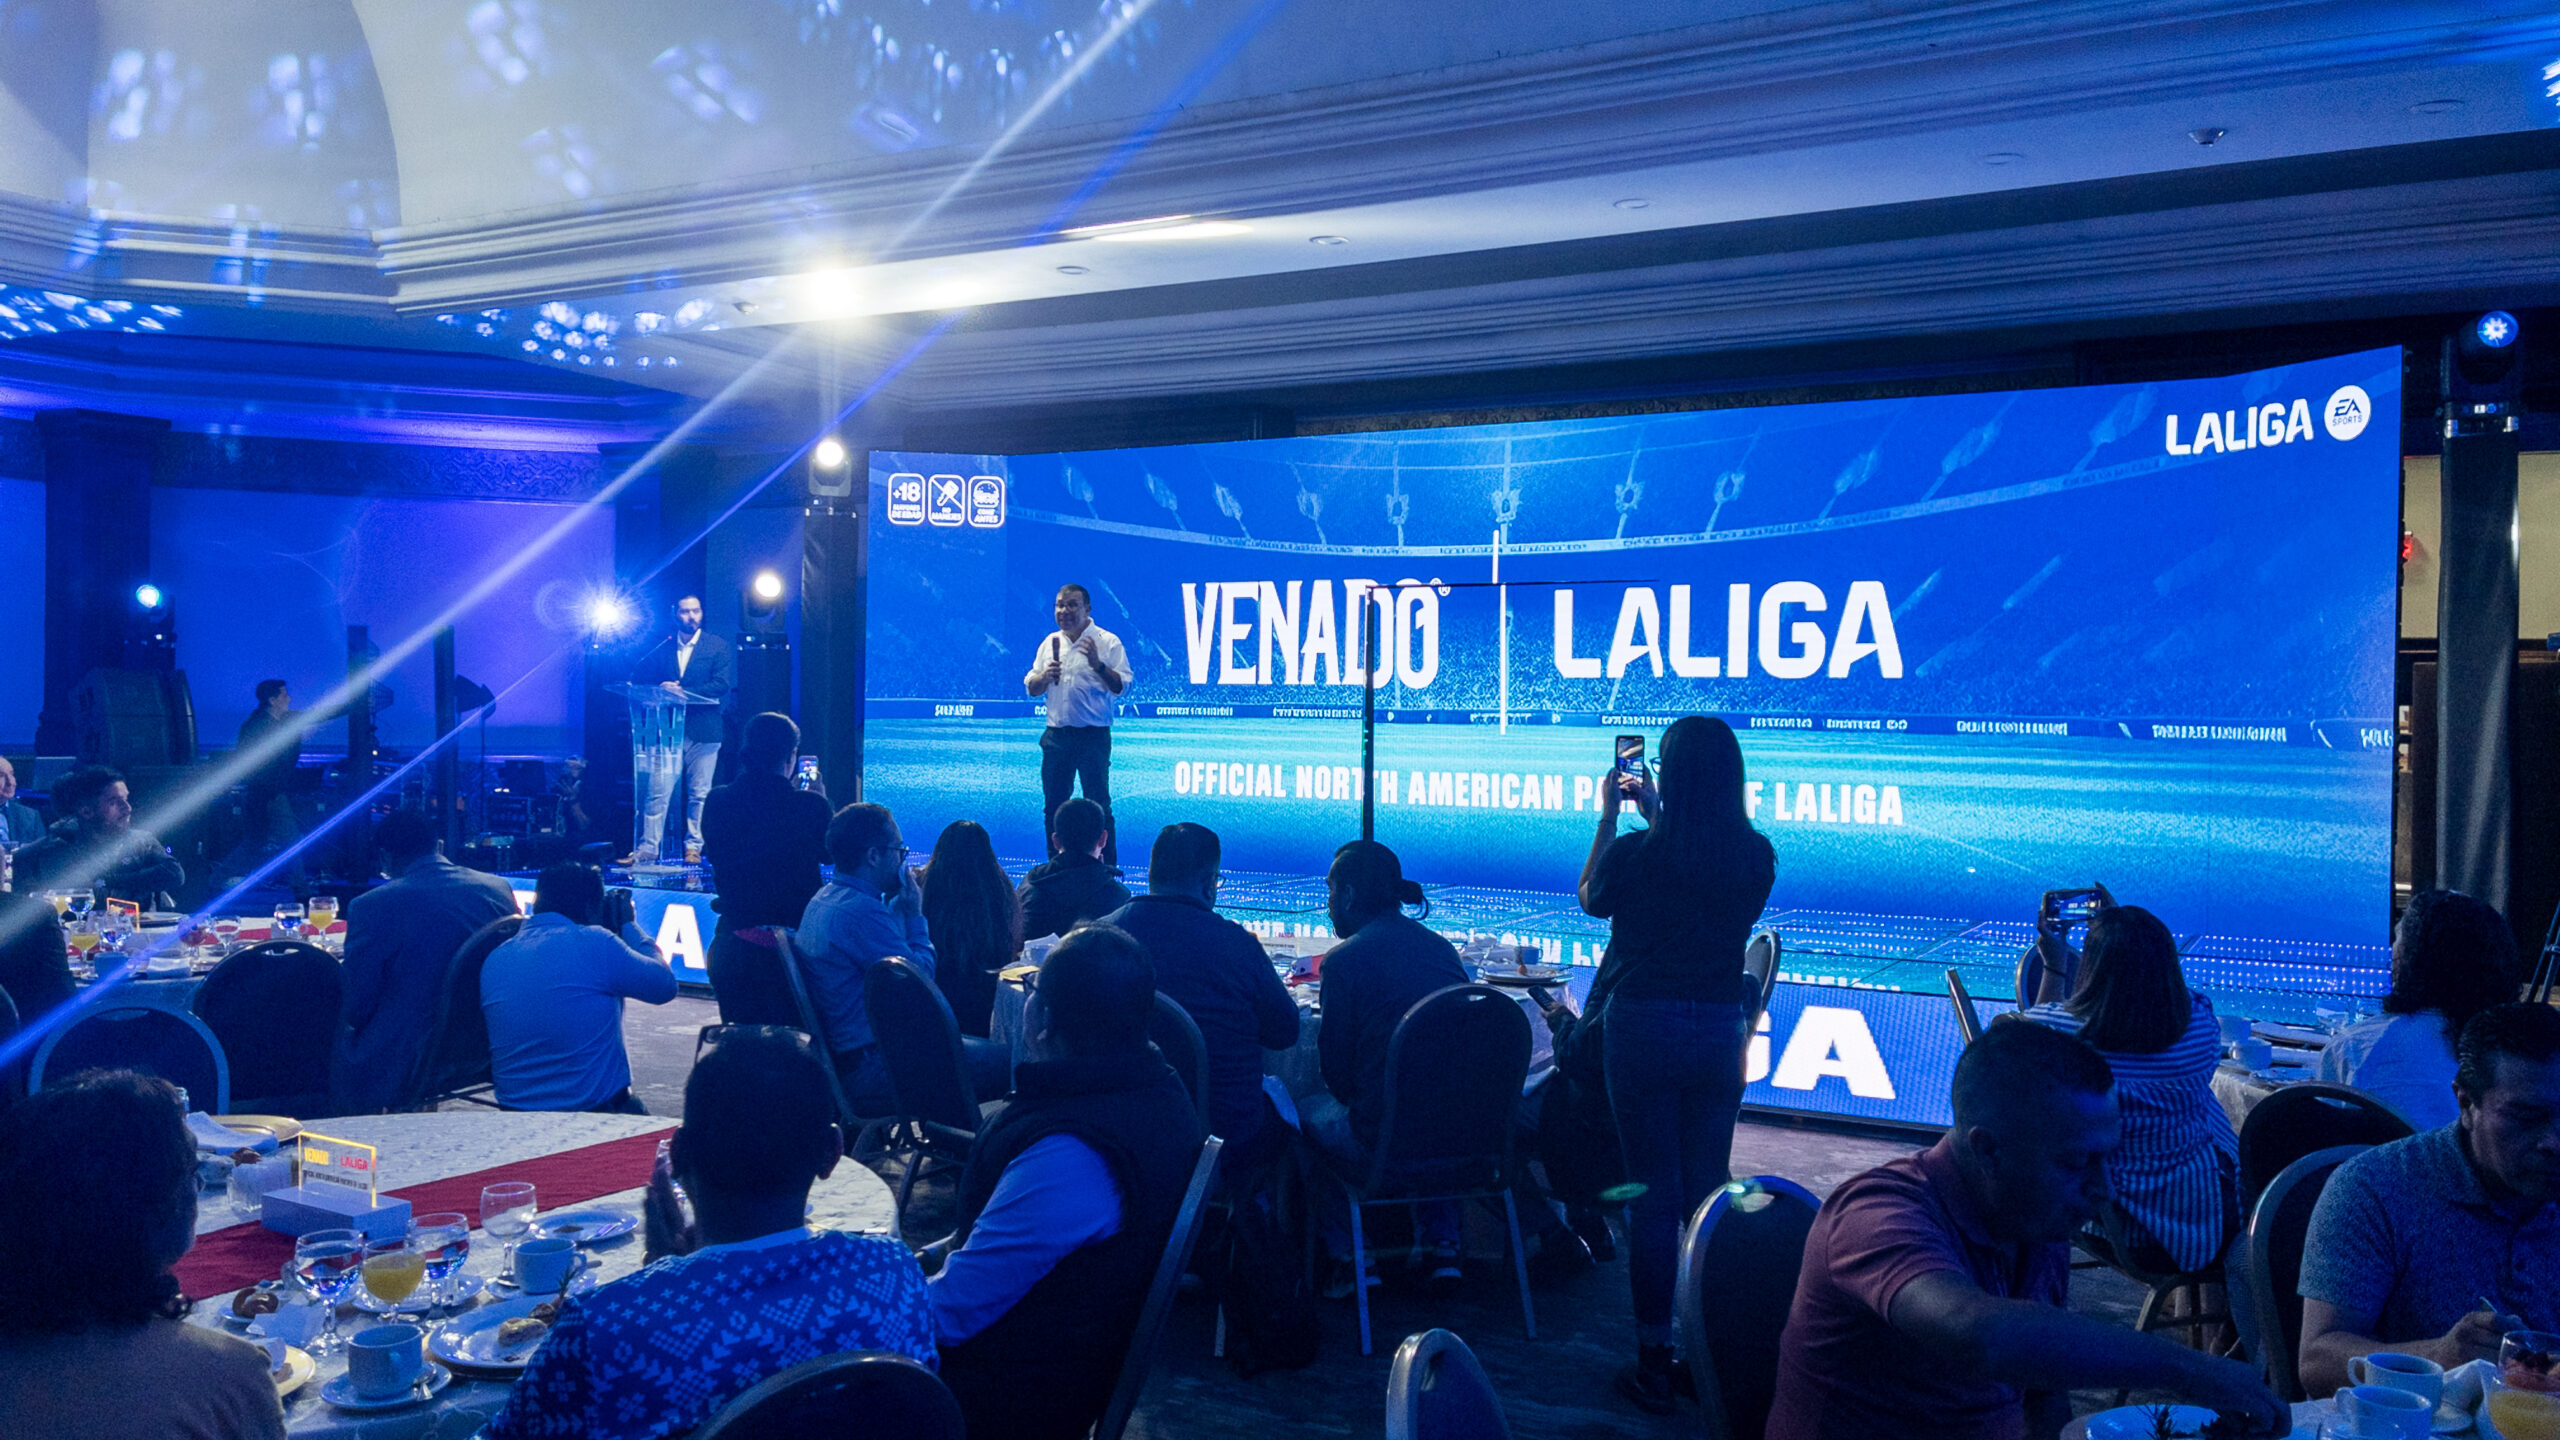 VENADO se convierte en la primera marca centroamericana en ser patrocinador oficial de la LIGA